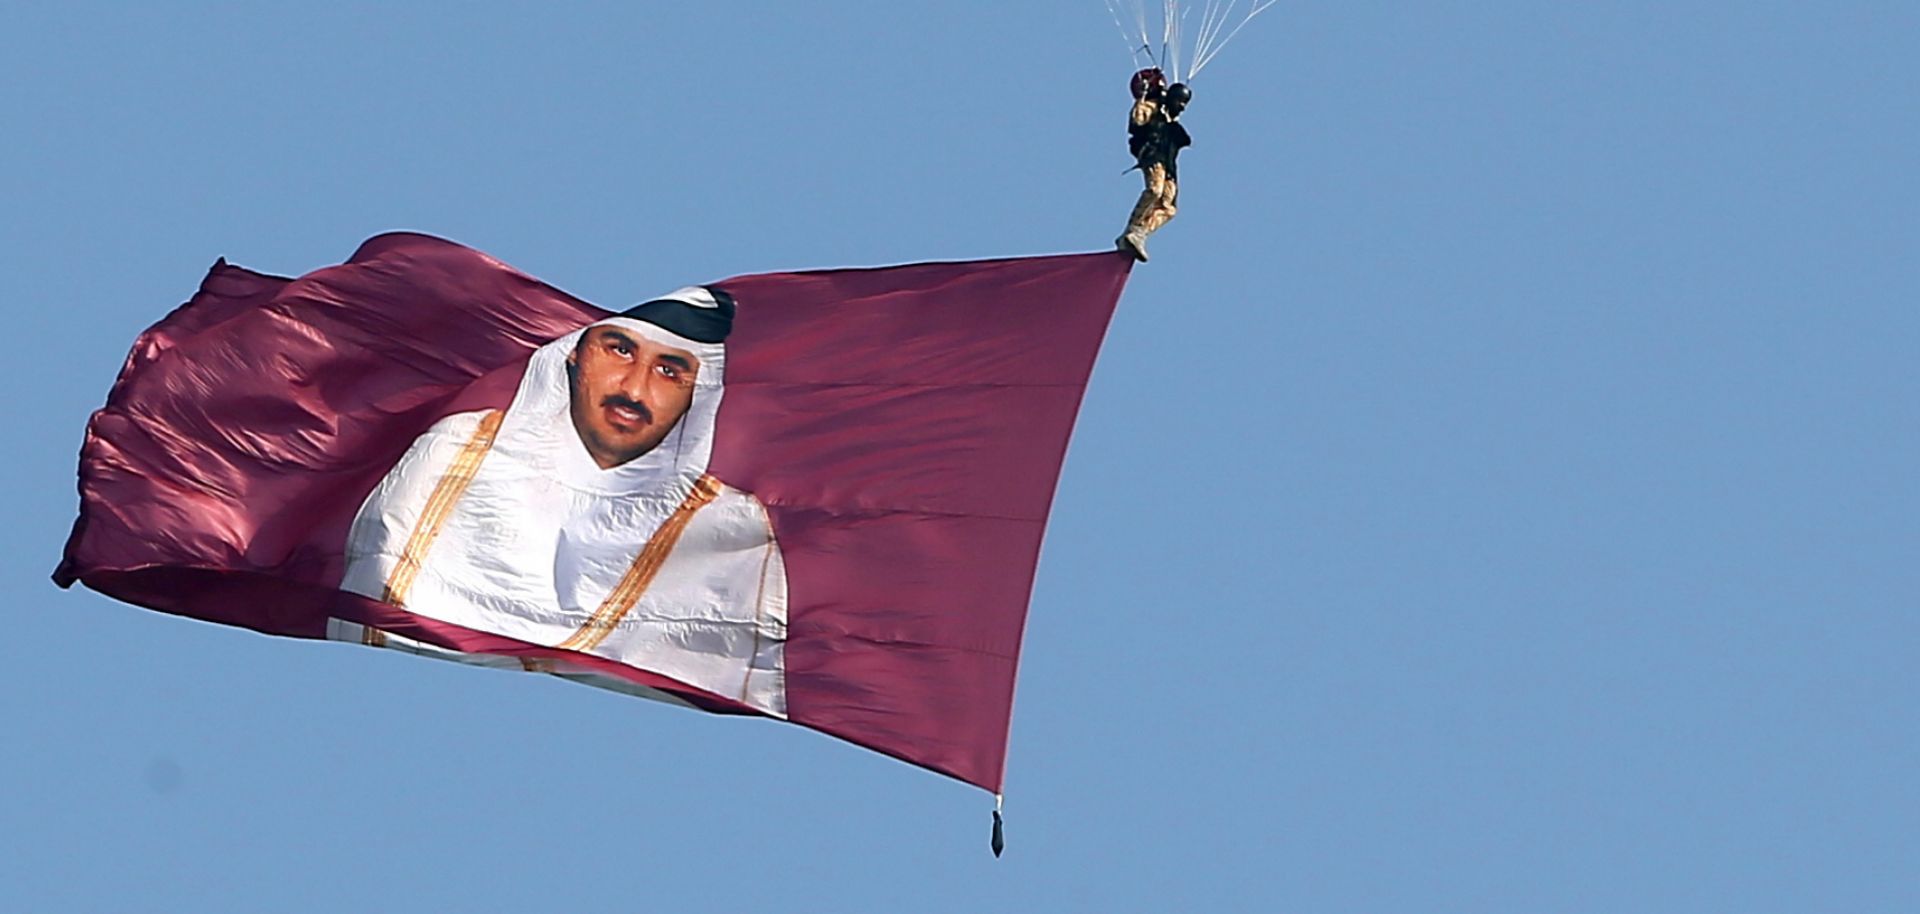 A paraglider displays a flag depicting Qatar's leader, Sheikh Tamim bin Hamad al-Thani.